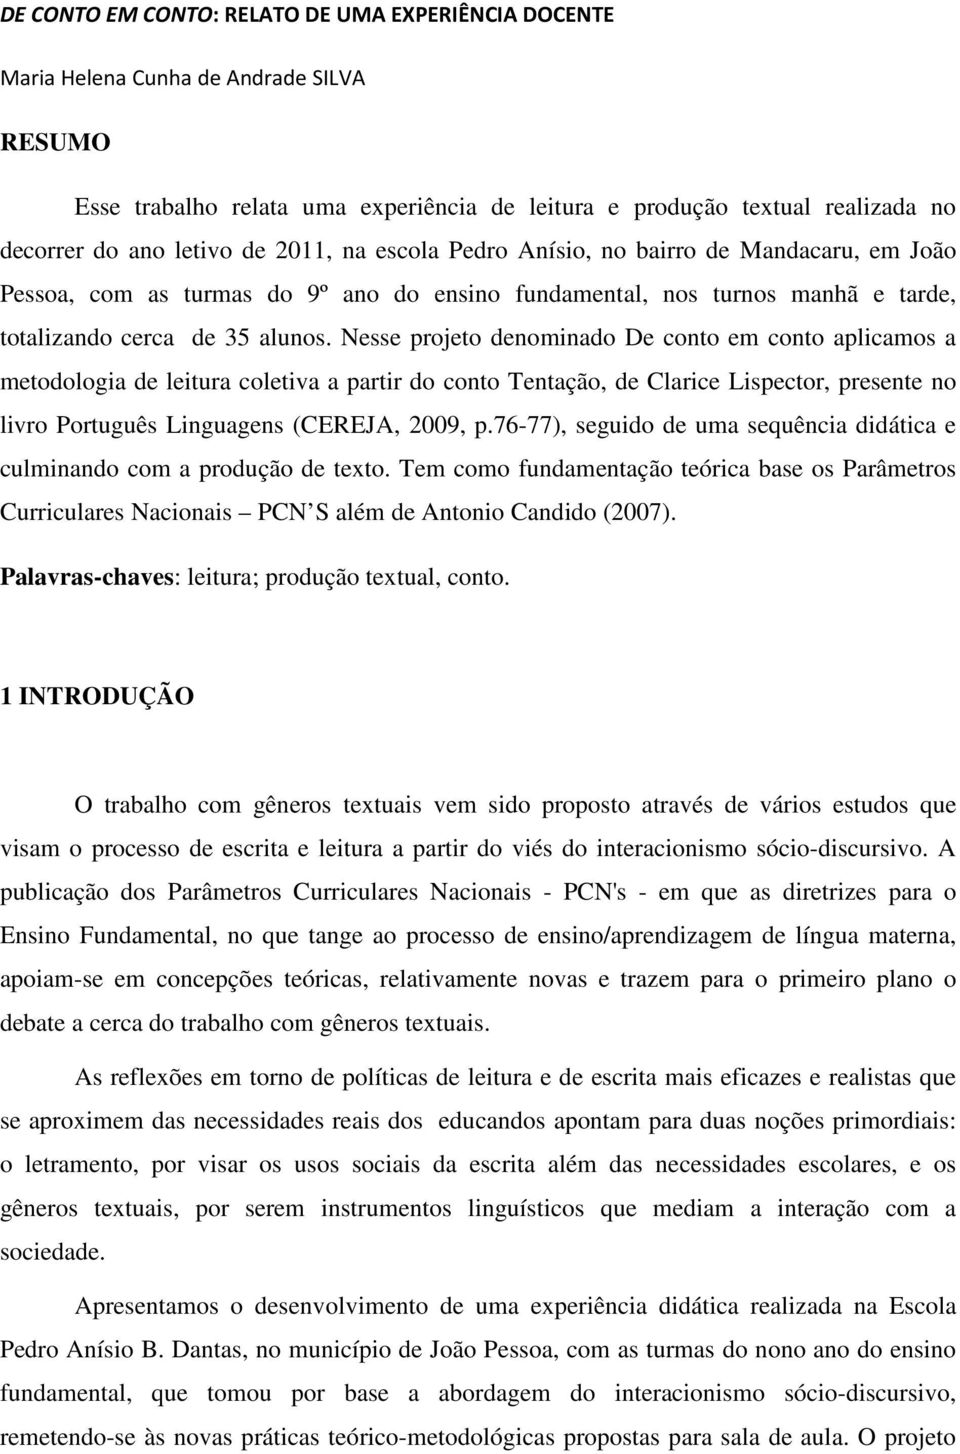 Nesse projeto denominado De conto em conto aplicamos a metodologia de leitura coletiva a partir do conto Tentação, de Clarice Lispector, presente no livro Português Linguagens (CEREJA, 2009, p.